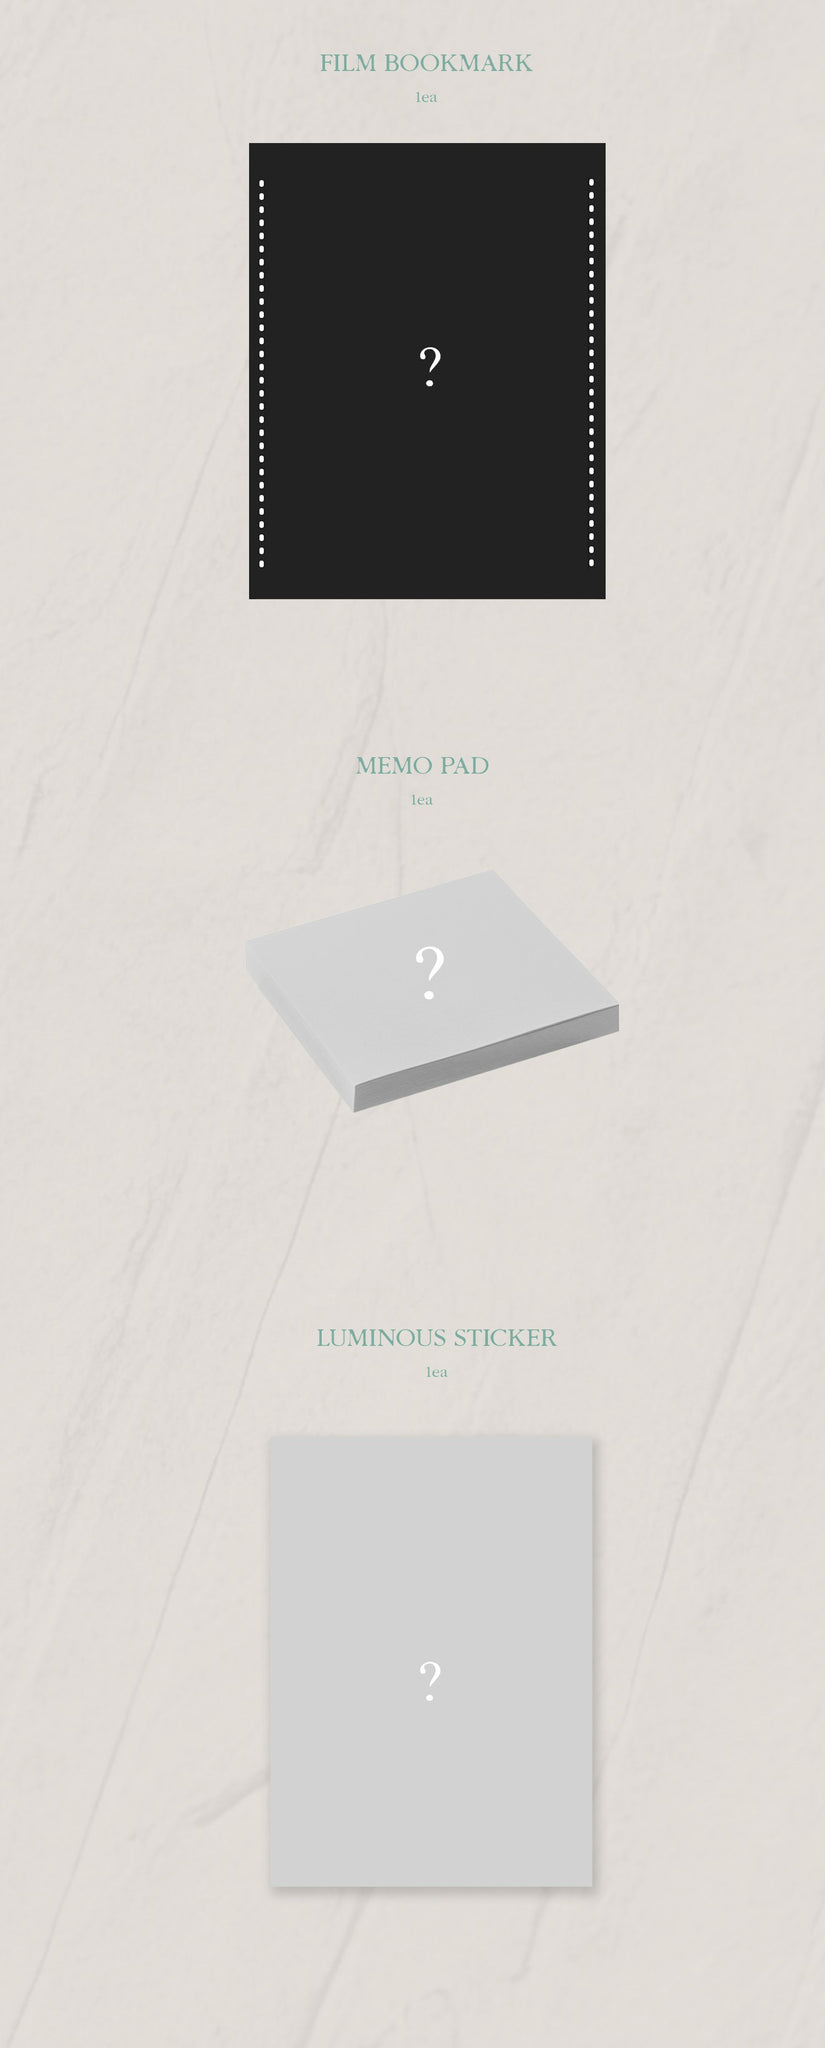 Queen of Tears OST Inclusions: Film Bookmark, Memo Pad, Luminius Sticker